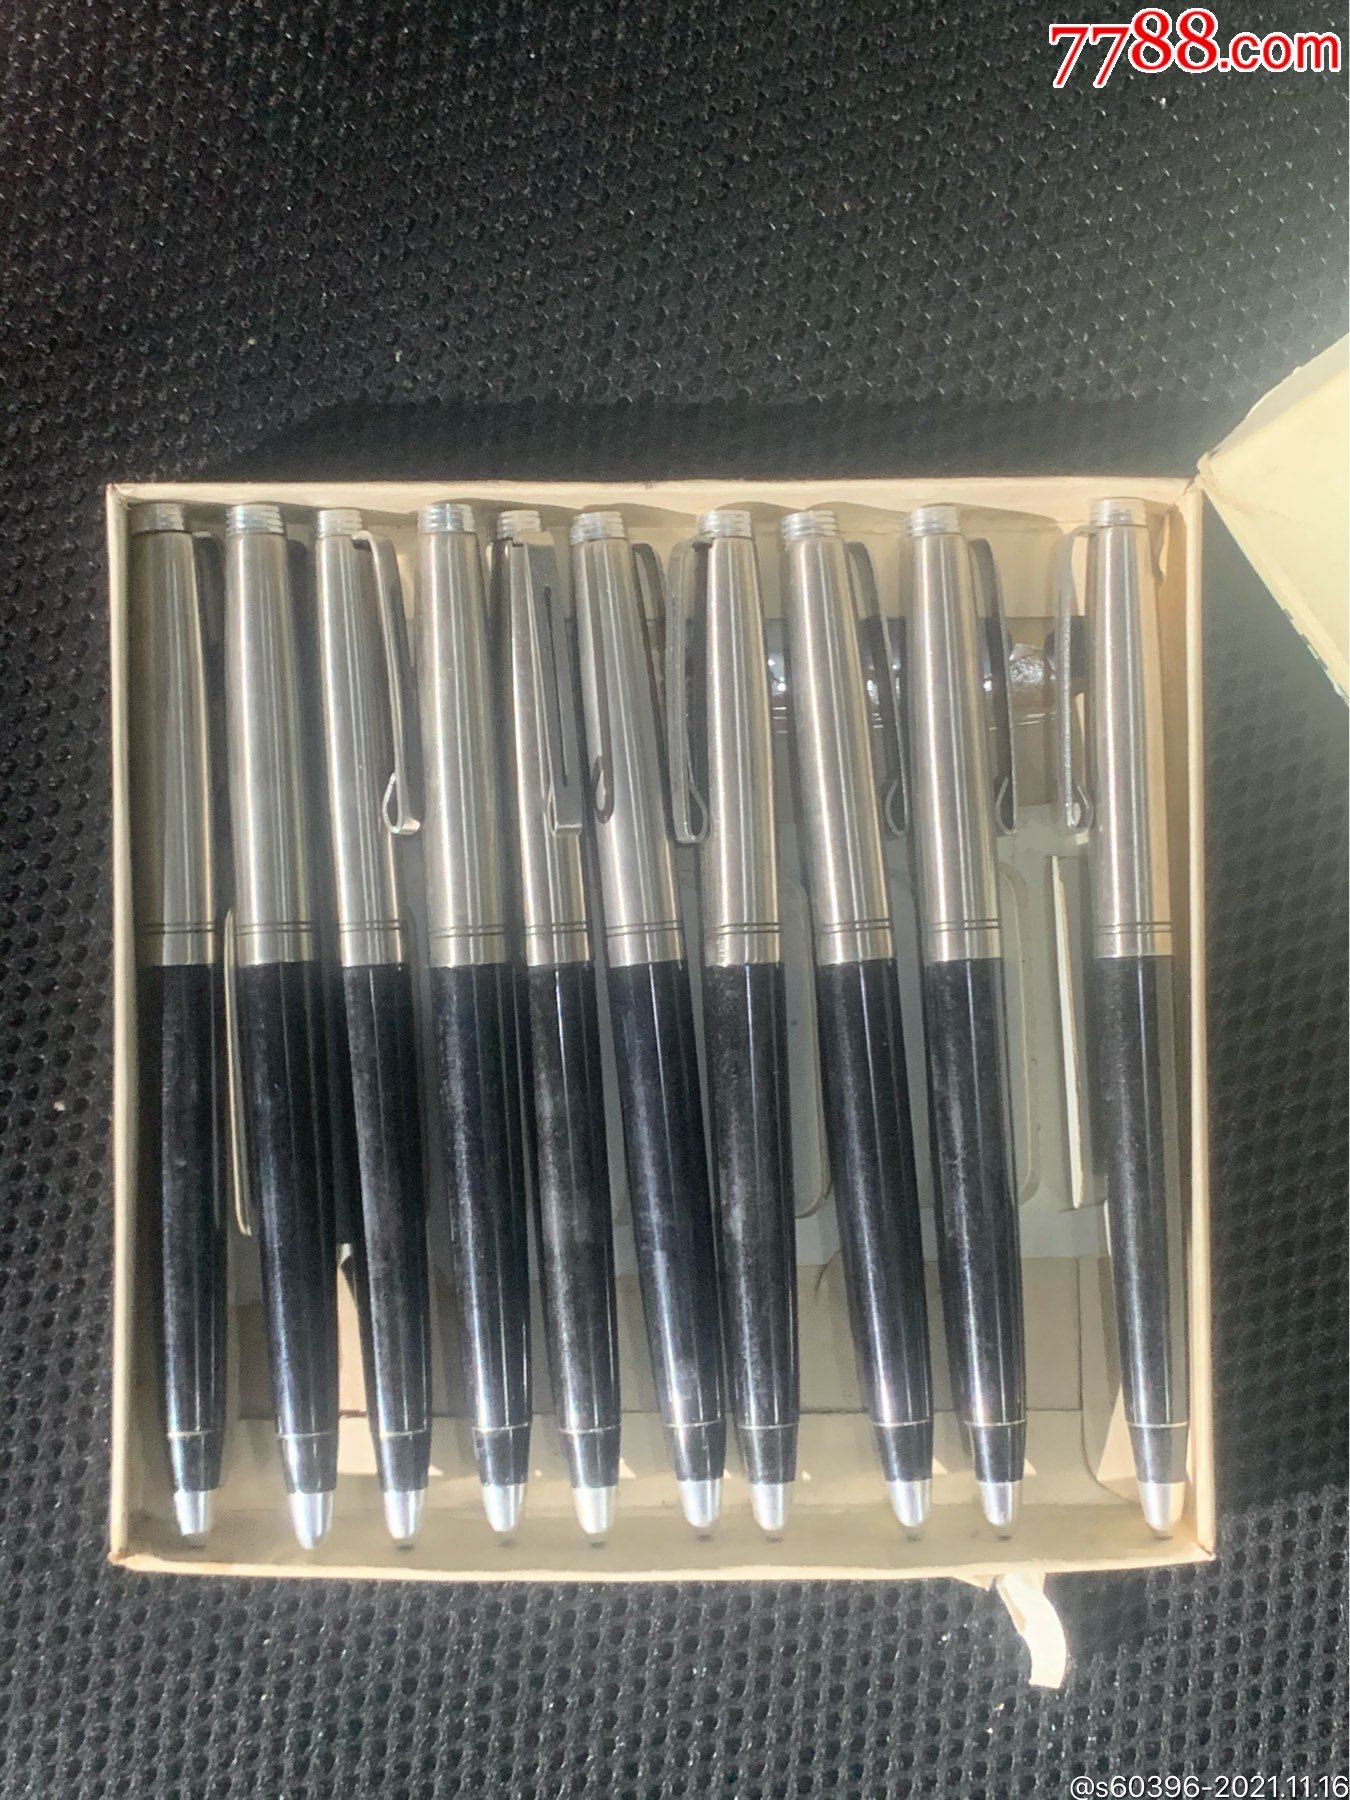 八十年代铱金笔钢笔圆珠笔两用笔一盒十支